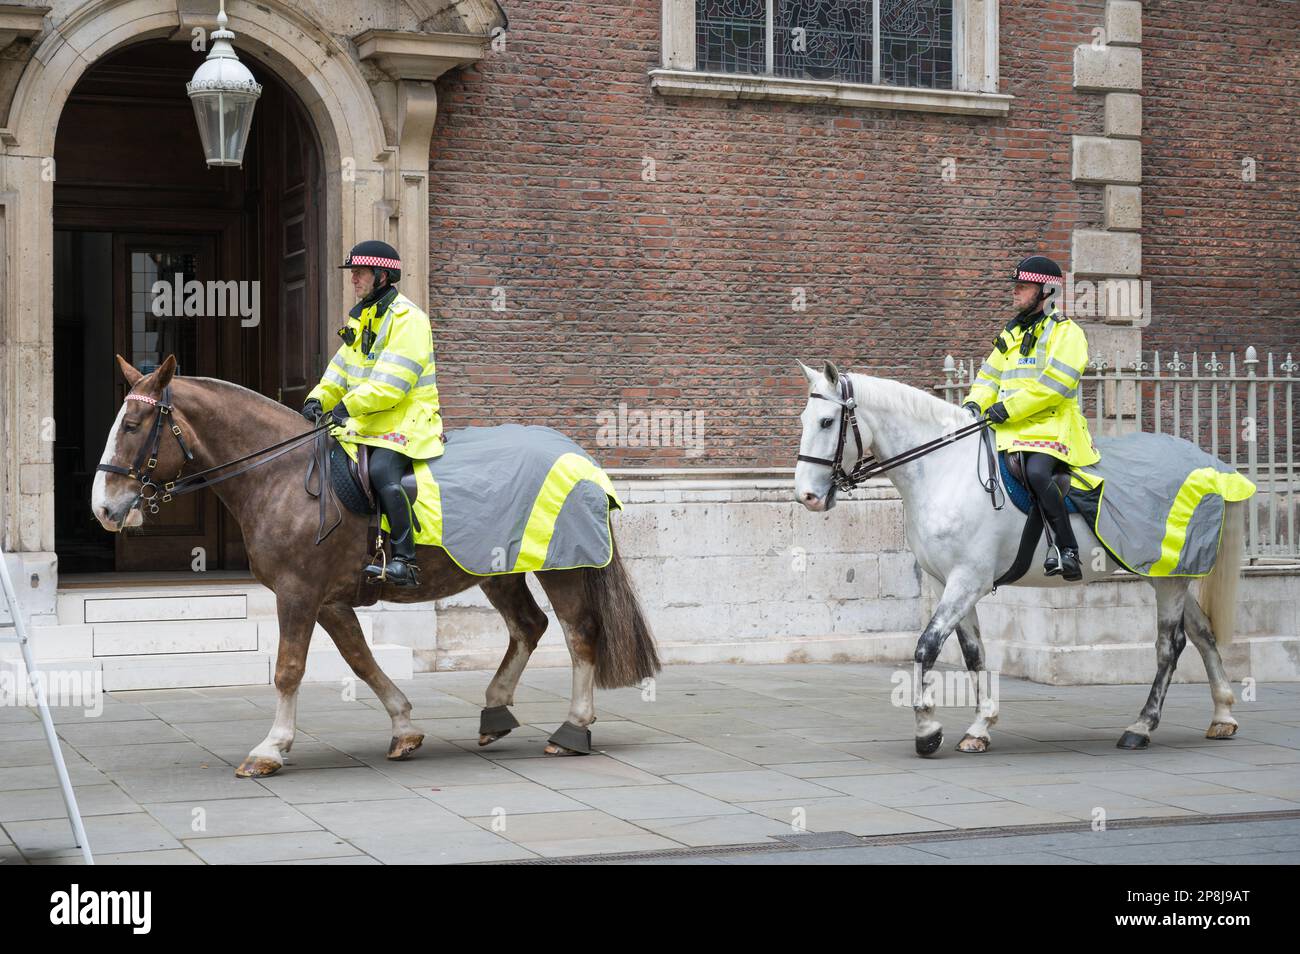 Gli agenti di polizia della città di Londra cavalcano cavalli attraverso il Bow Churchyard di fronte alla chiesa di St Mary-le-Bow. Londra, Inghilterra, Regno Unito Foto Stock